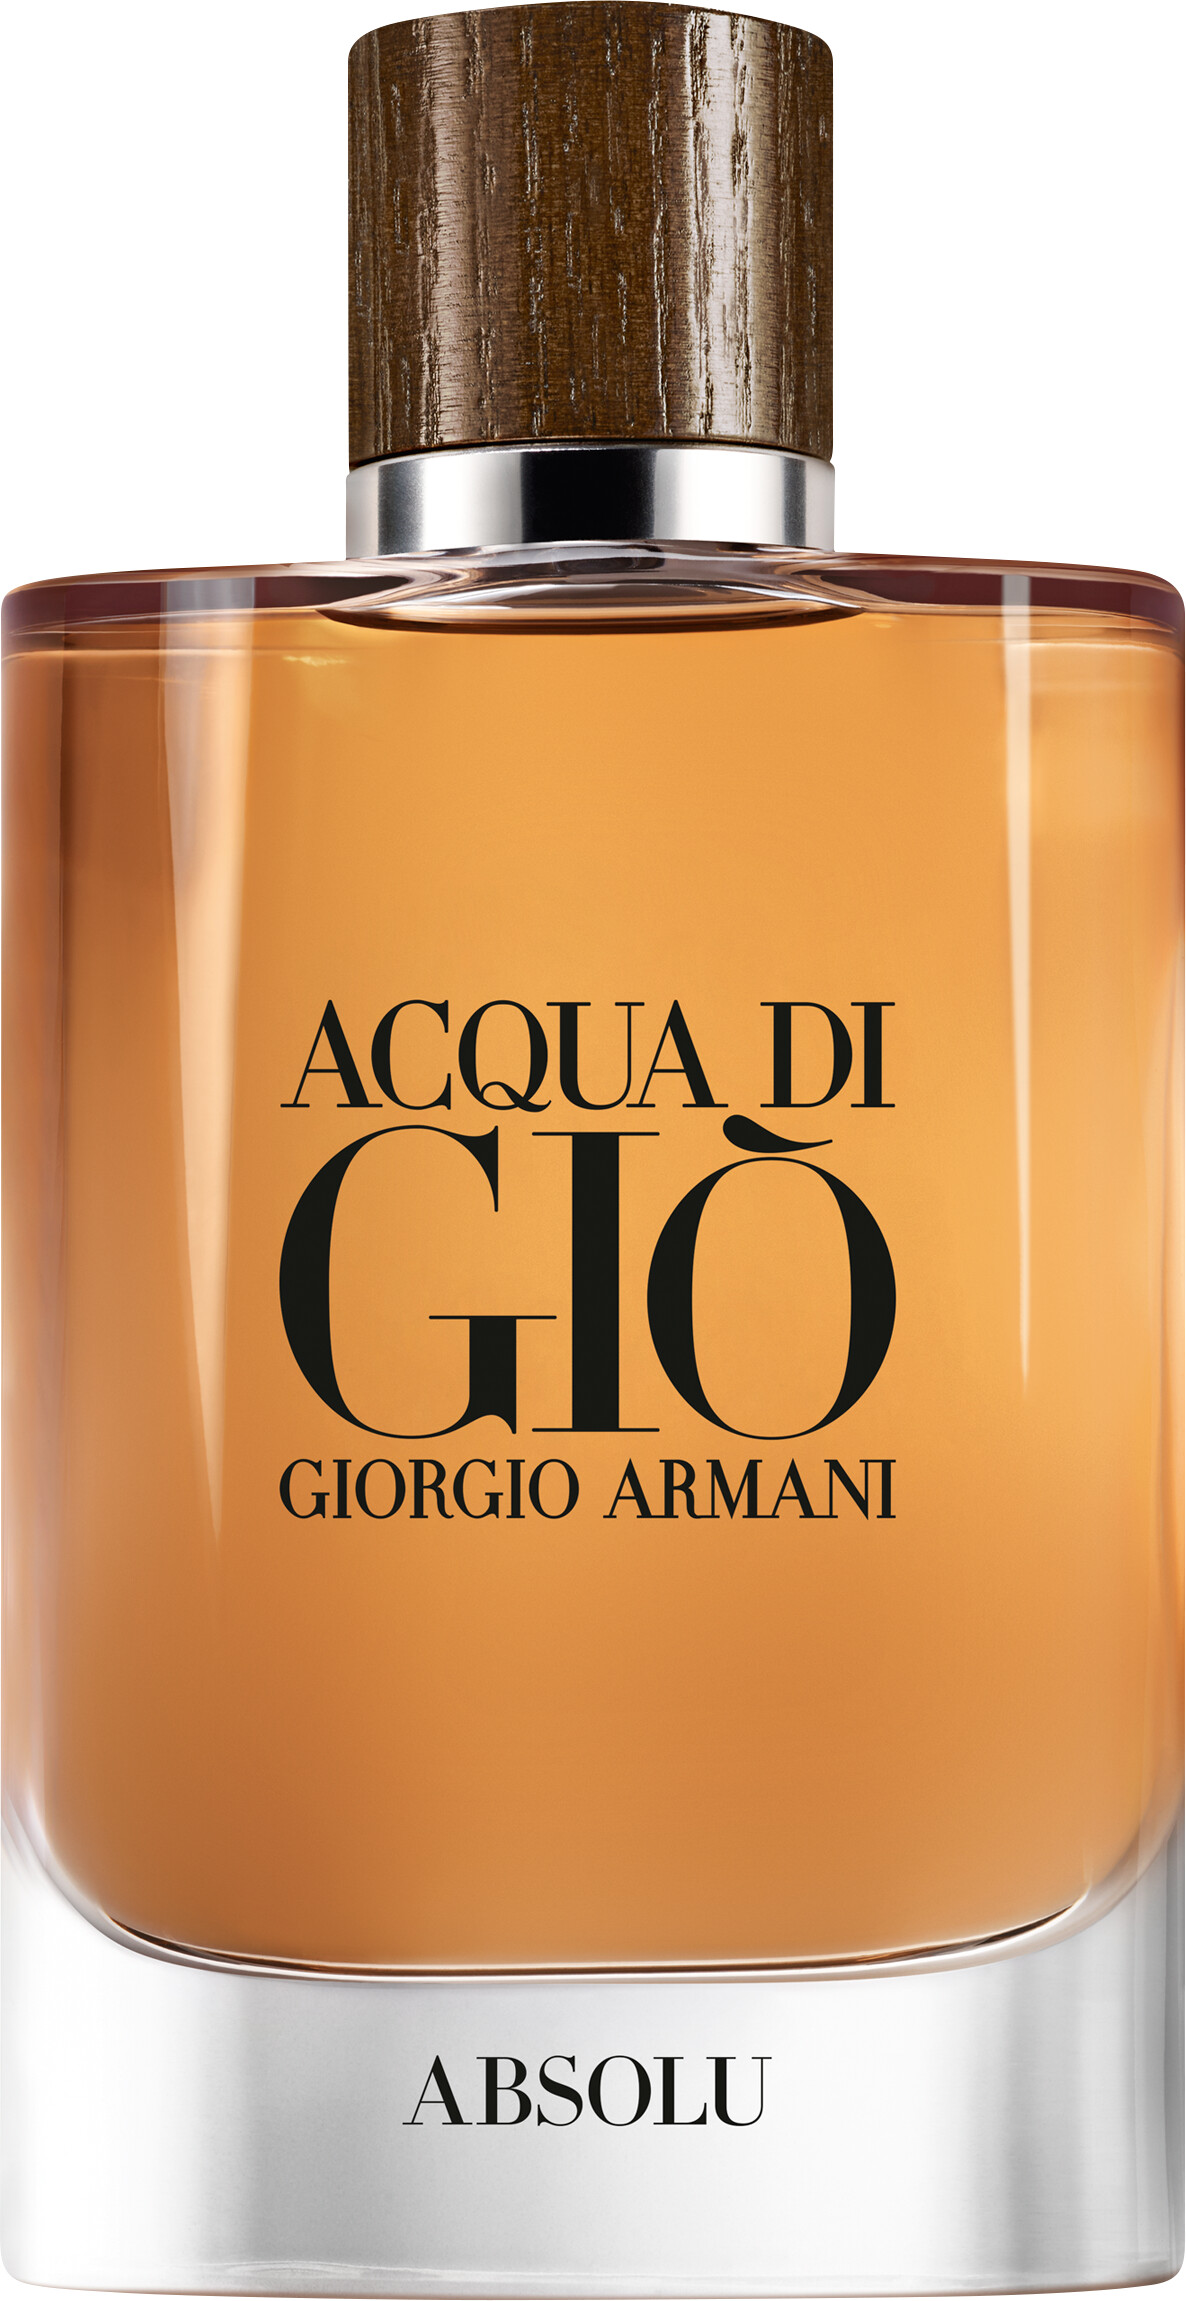 Giorgio Armani Acqua di Gio Pour Homme Absolu